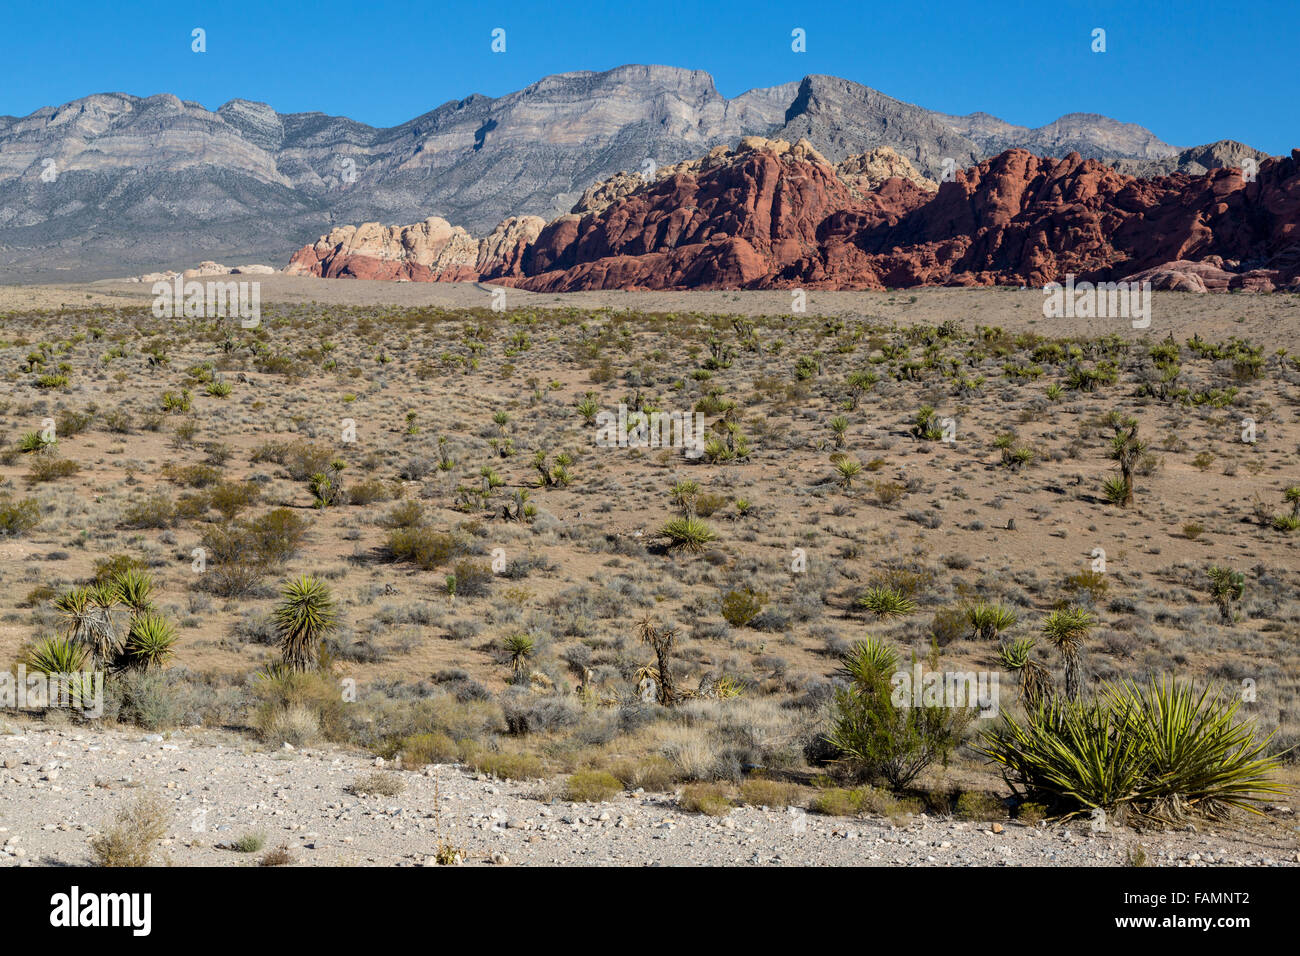 El Red Rock Canyon, en el estado de Nevada. Calico Hills (roca roja, arenisca Azteca), con roca gris Keystone empuje en segundo plano. Foto de stock